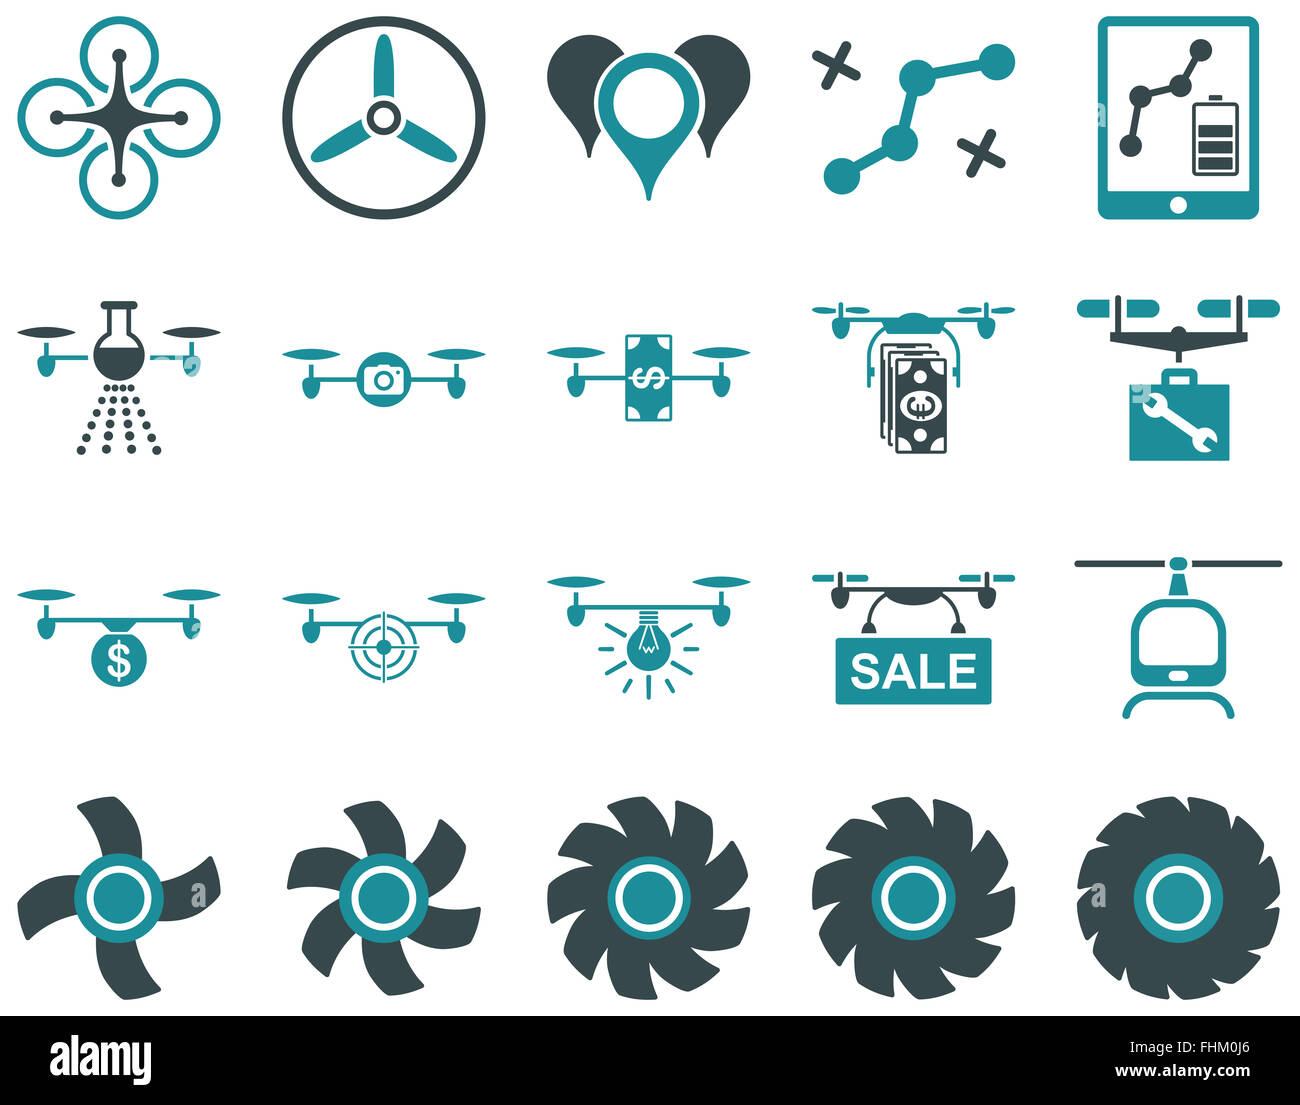 Zumbido del aire y quadcopter iconos de herramientas Foto de stock